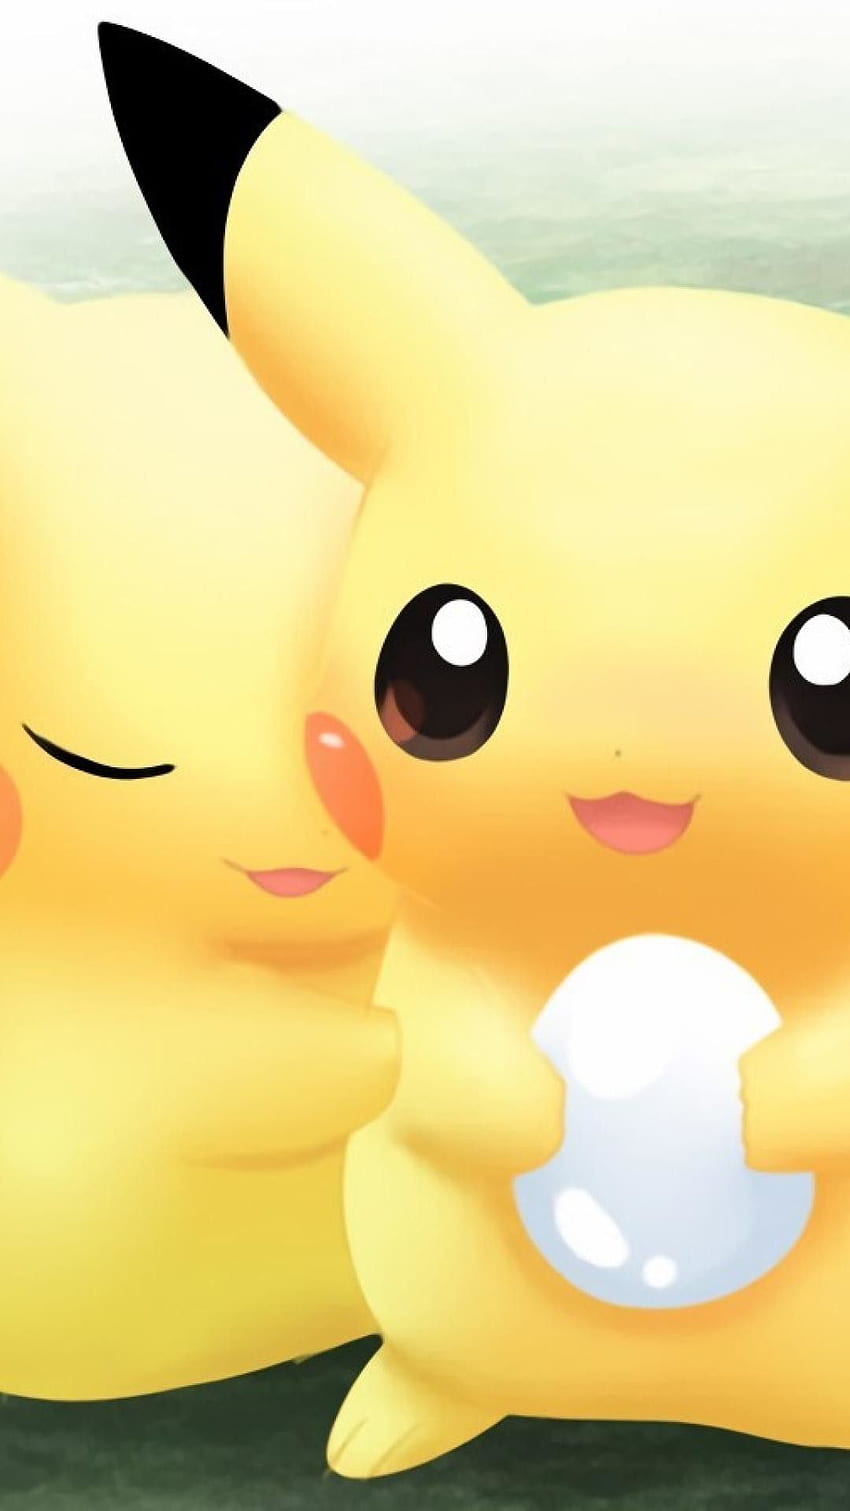 Cute Pikachu Pokemon Wallpaper Download  MobCup